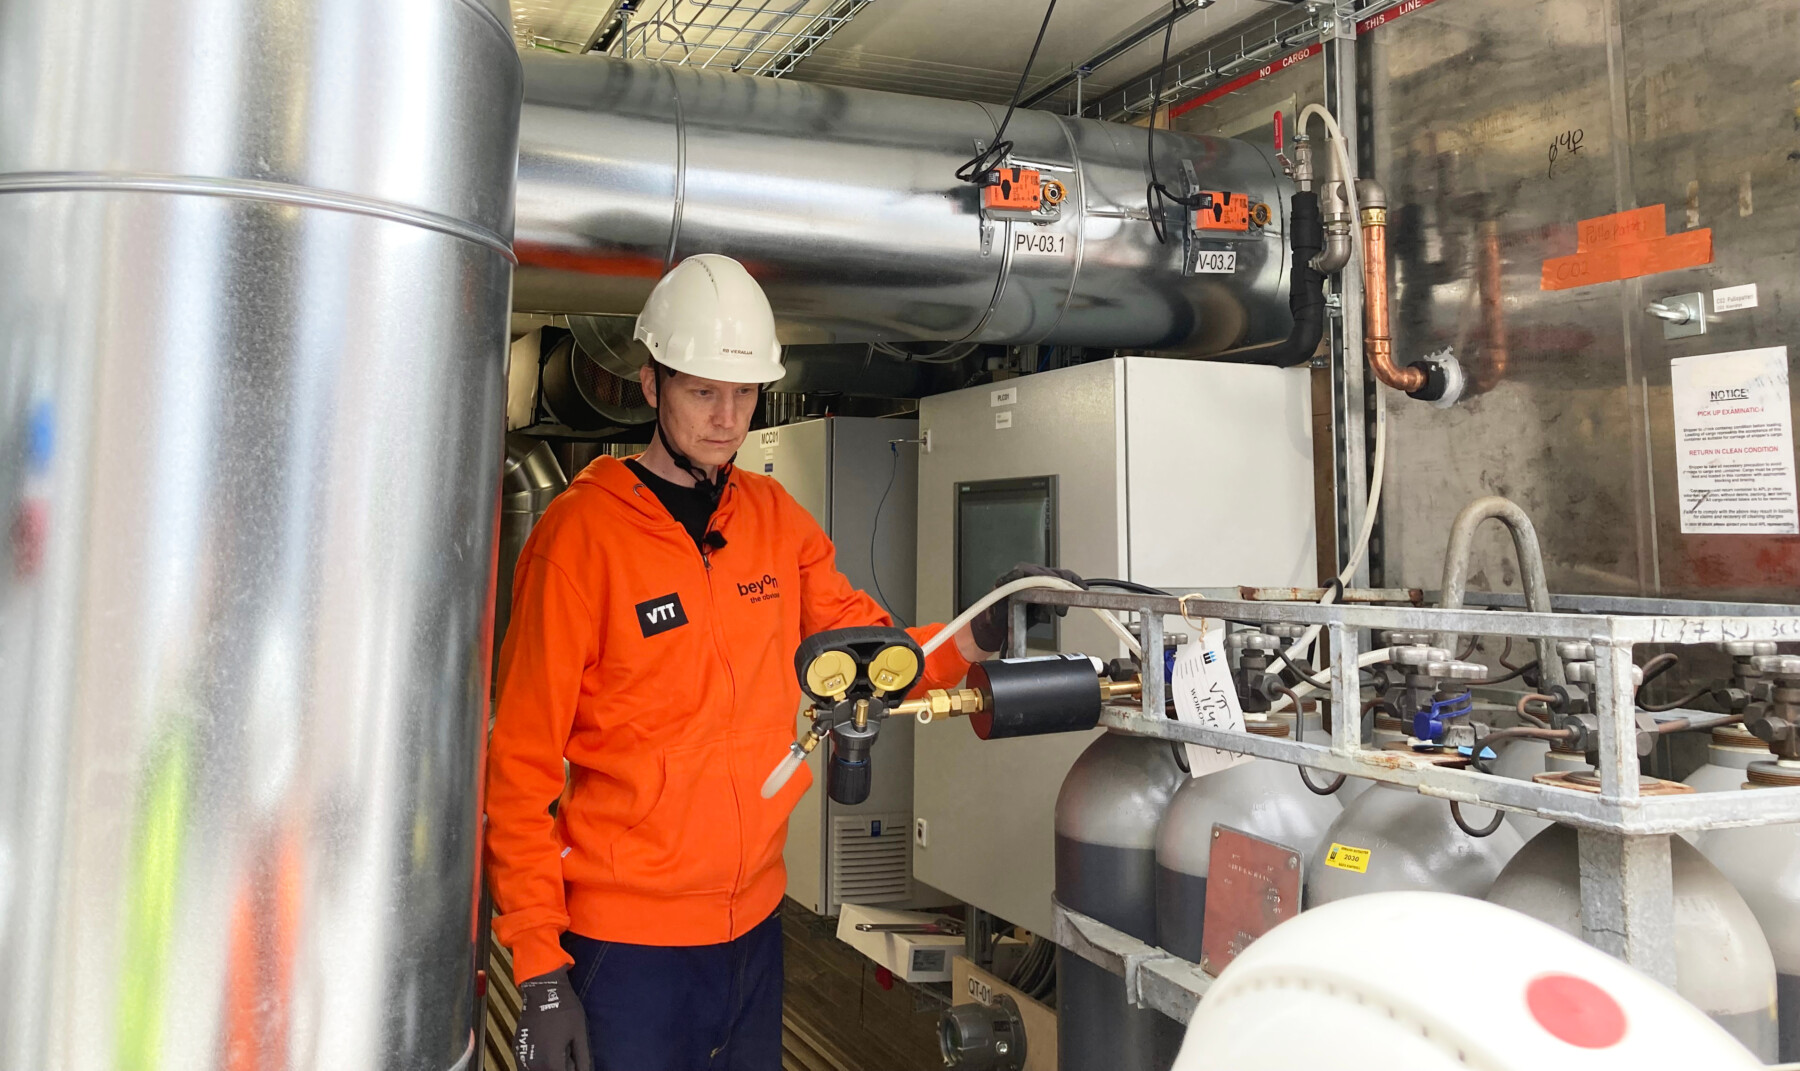 Um homem com capacete e jaqueta colorida observa um conjunto de tubos, tanques e válvulas em uma instalação industrial.